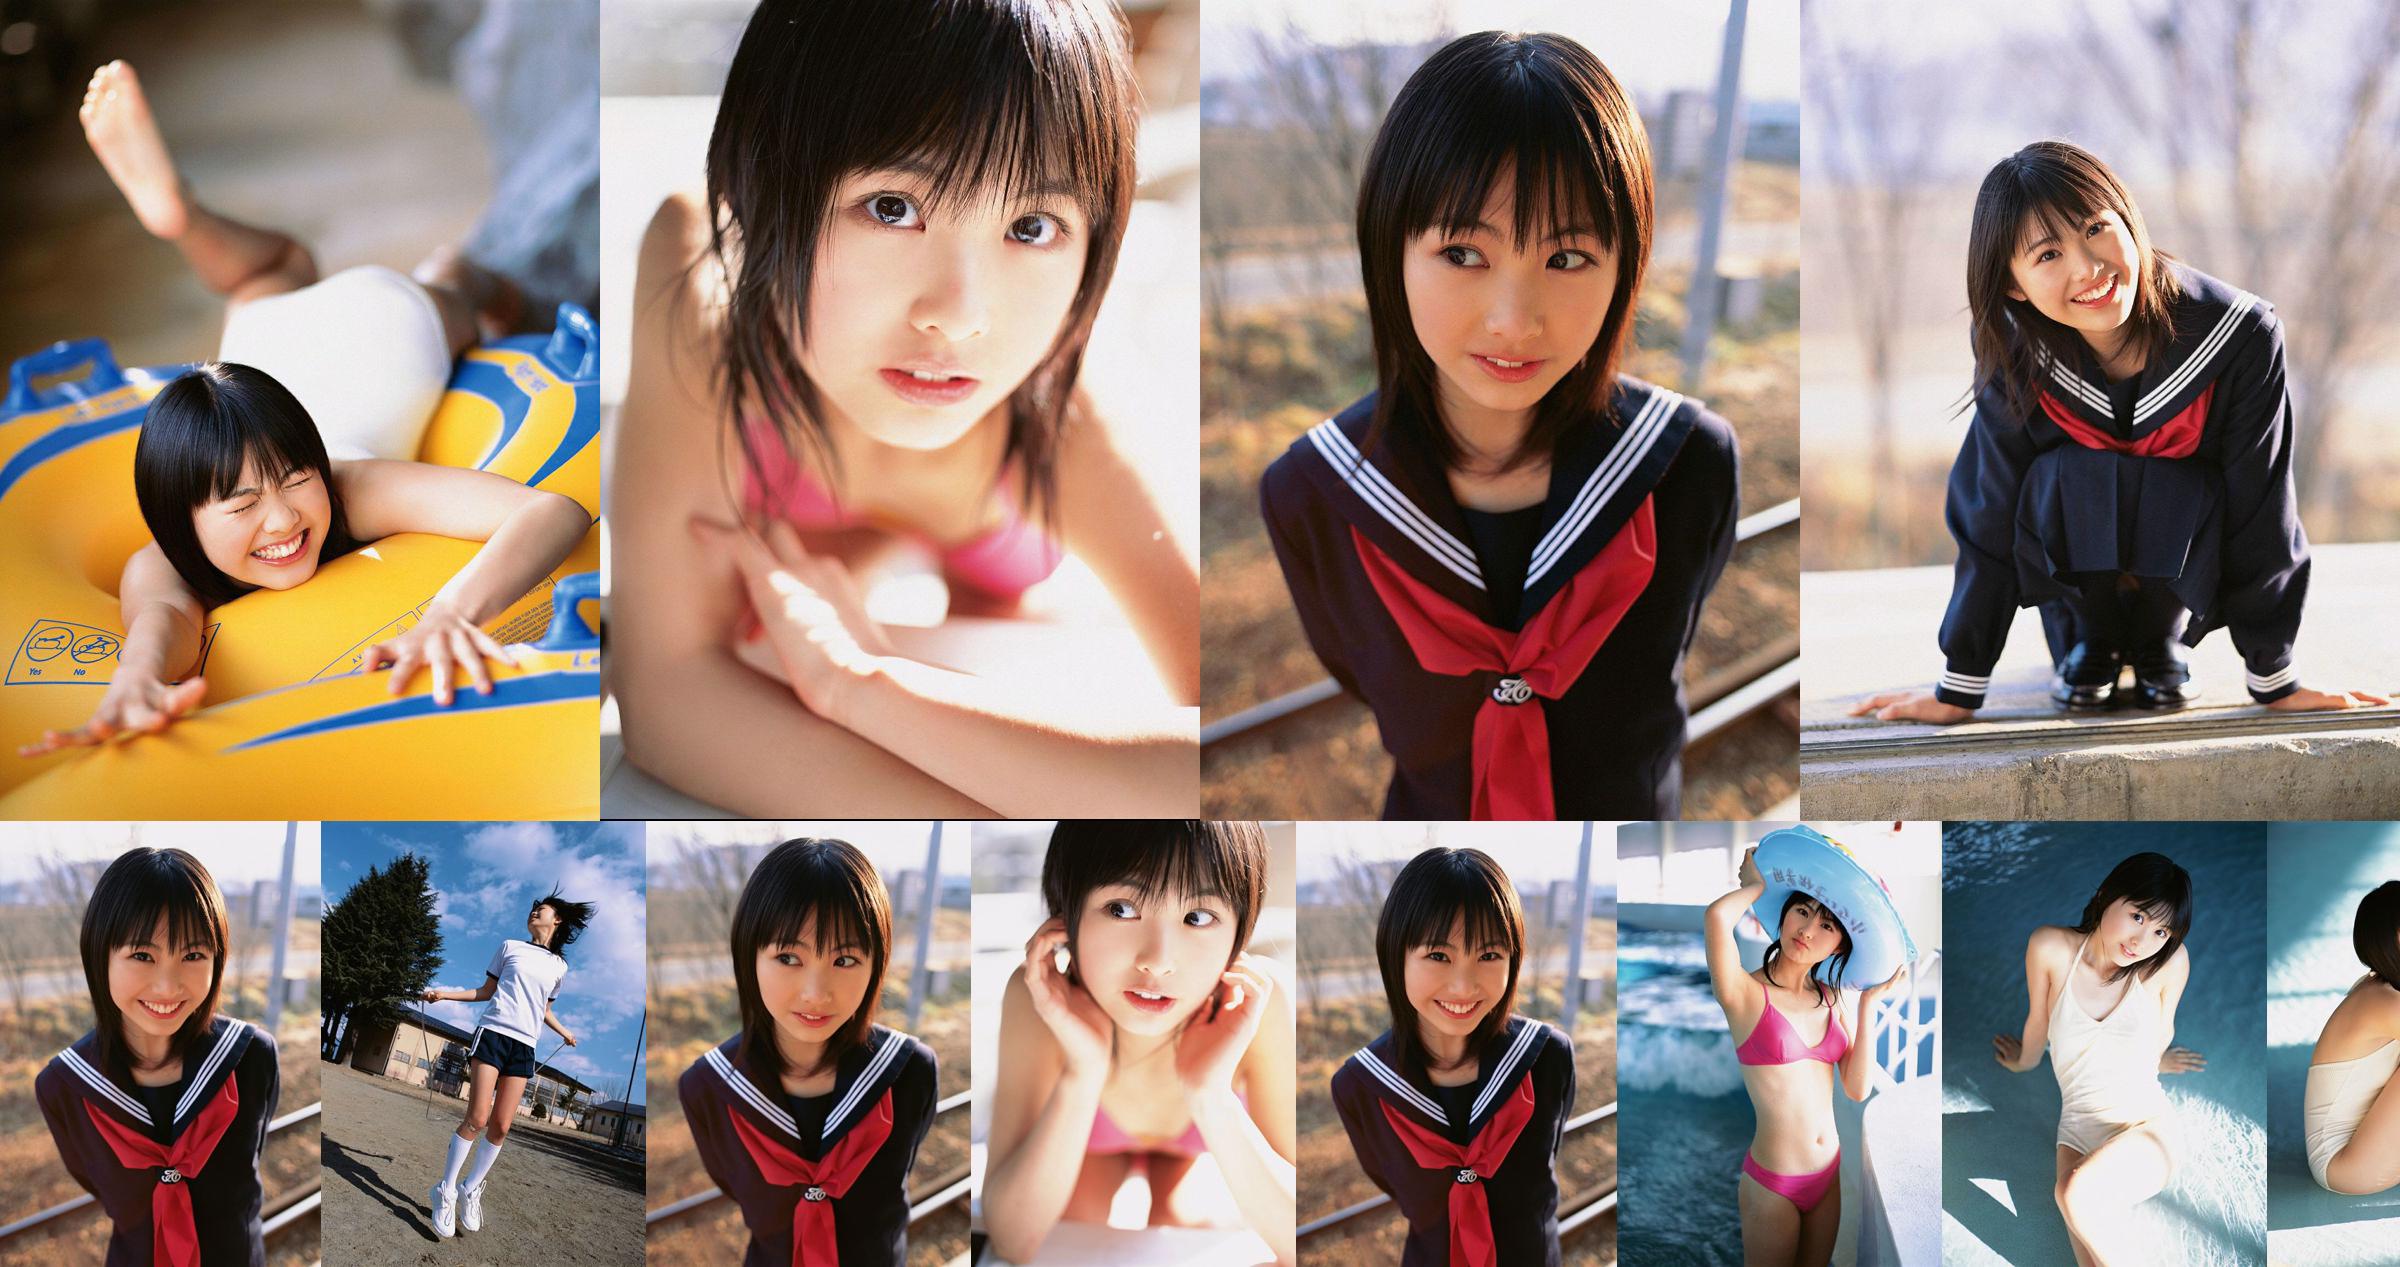 Aya Sakata "¡Chica super guapa-MENOR DE EDAD!" [YS Web] Vol.202 No.9e7c7b Página 1